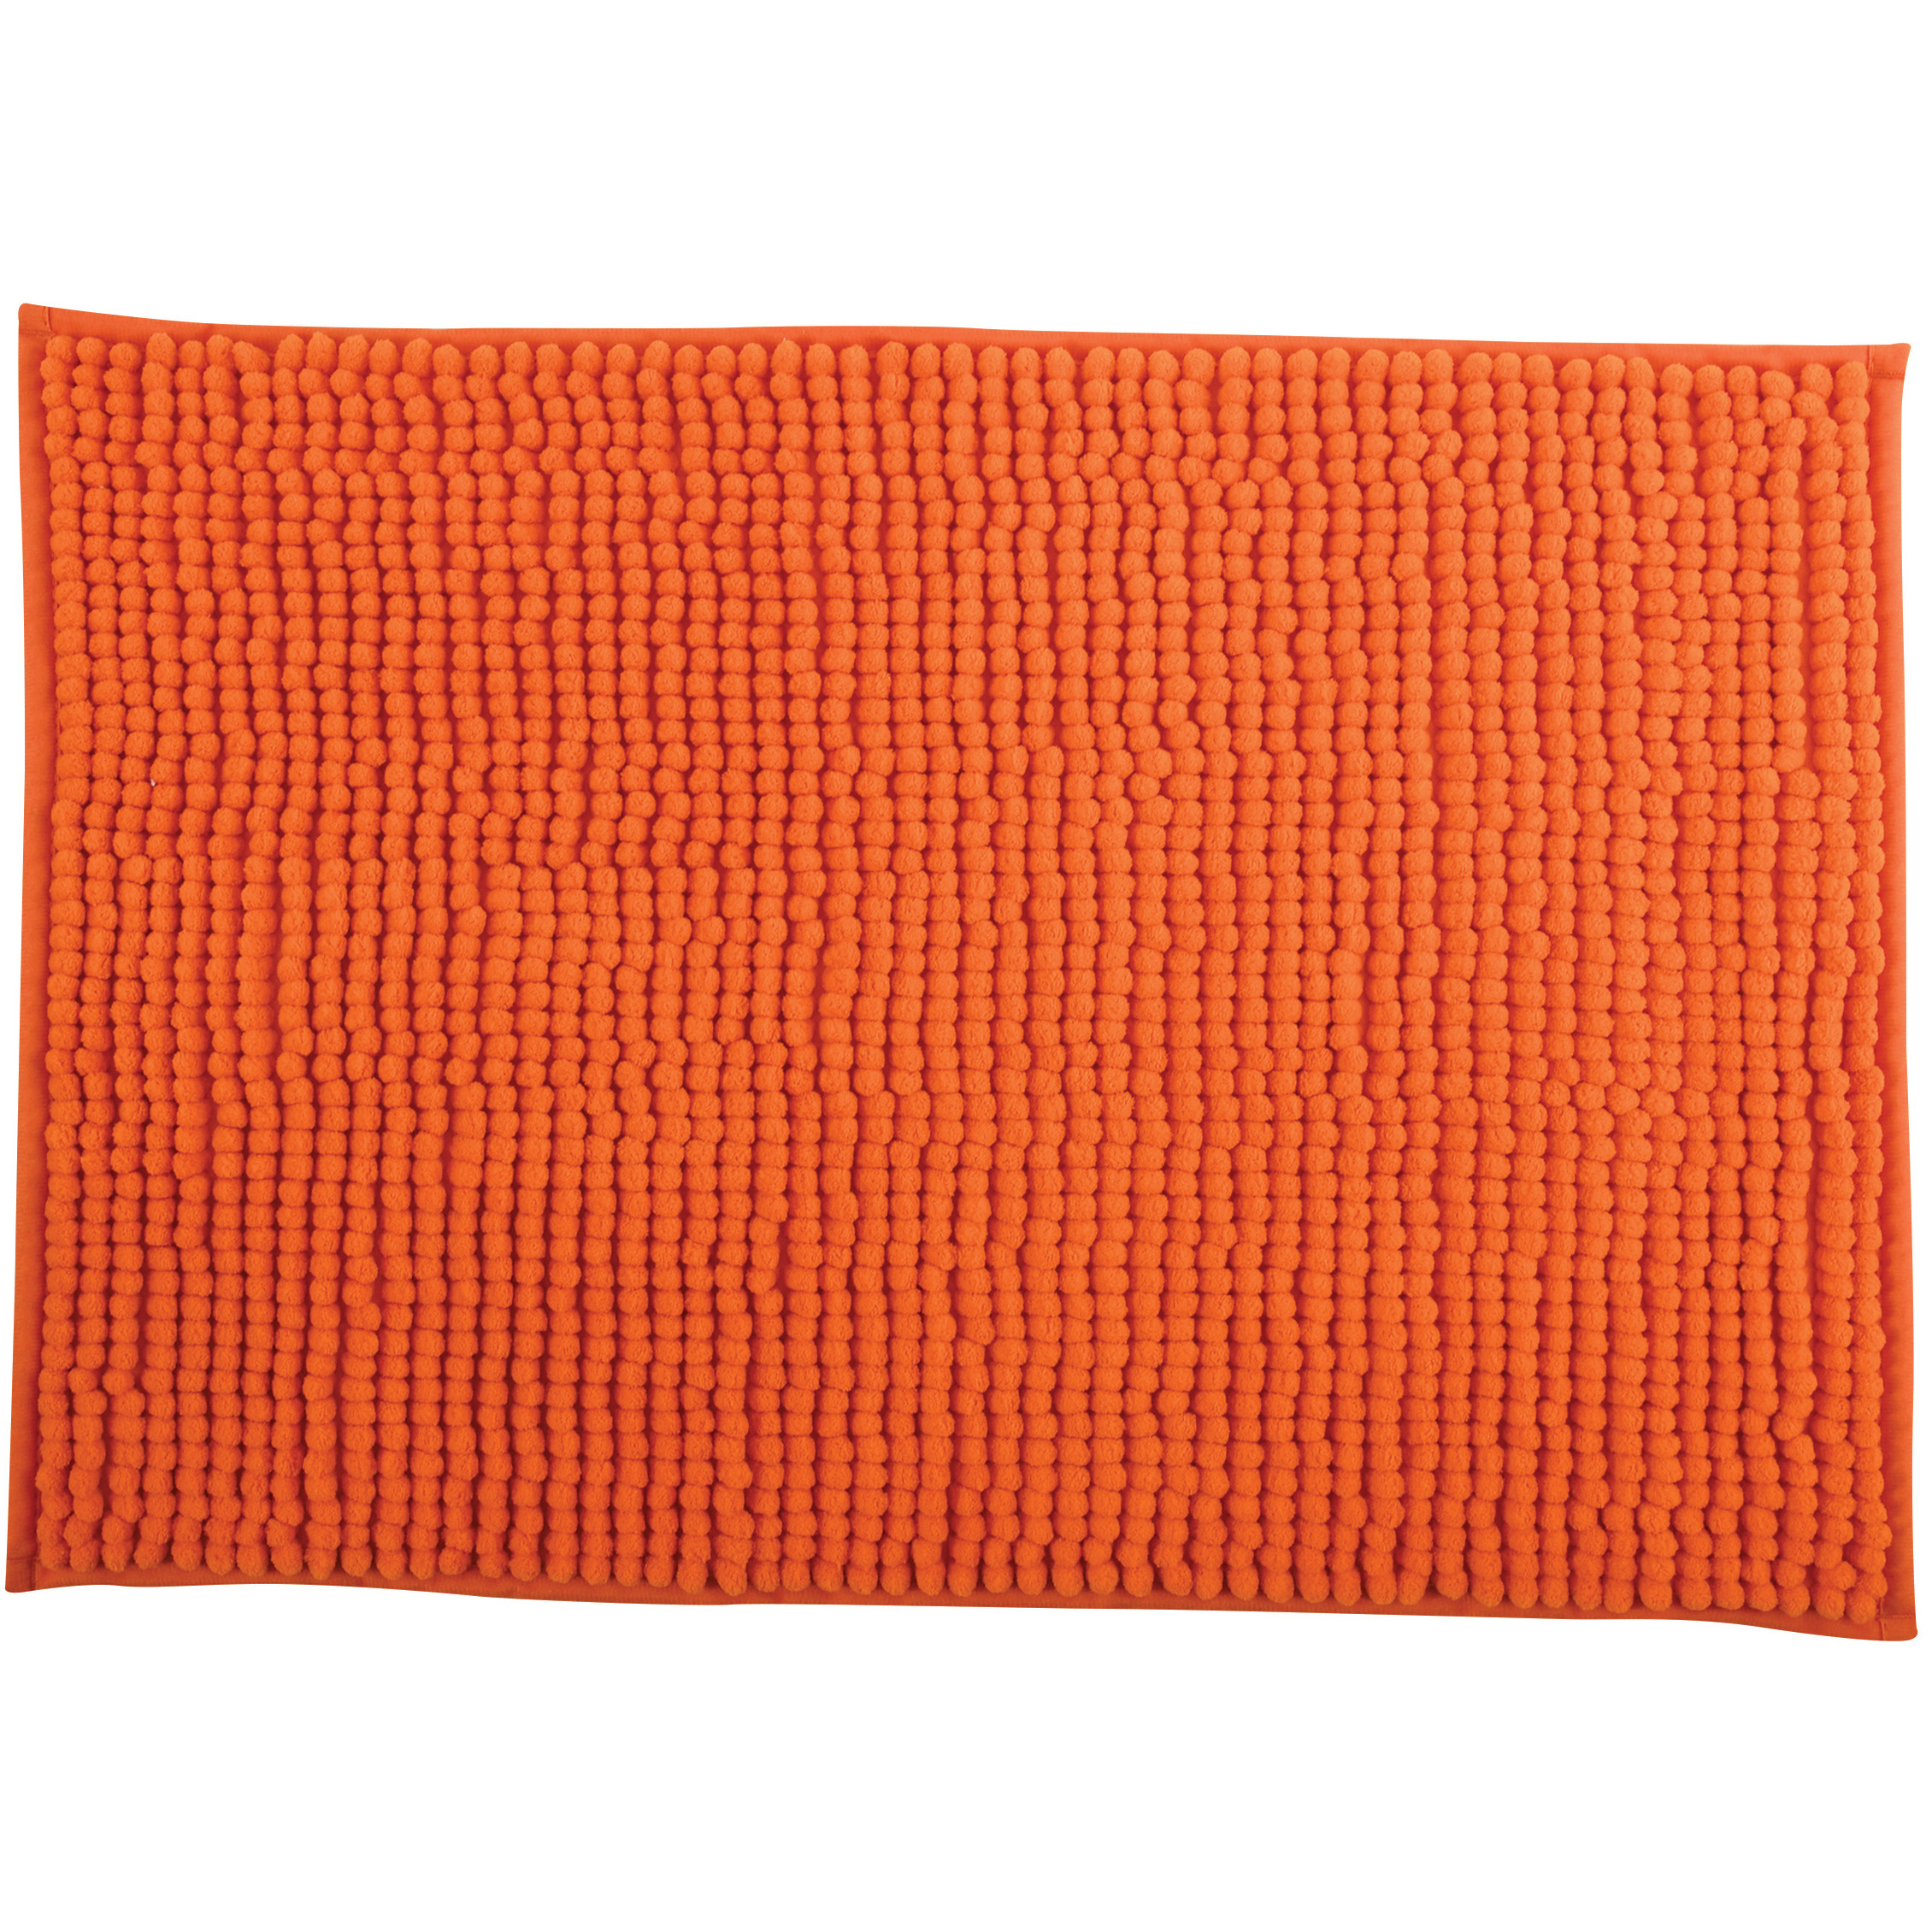 Badkamerkleedje-badmat tapijt voor op de vloer oranje 60 x 90 cm